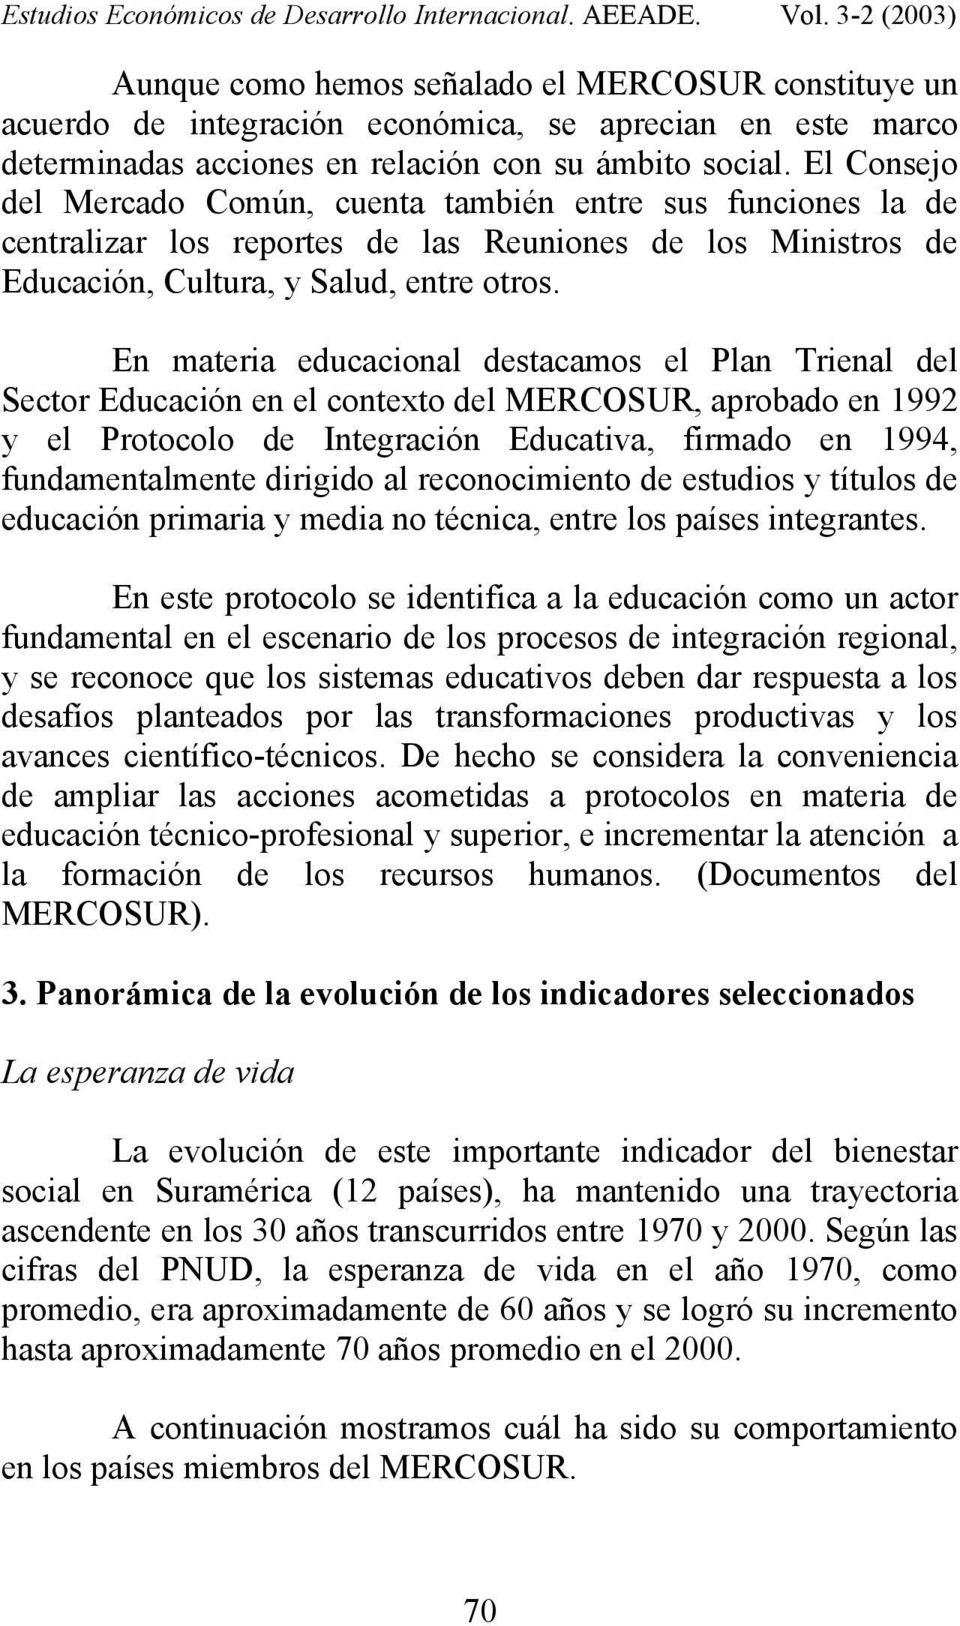 En materia educacional destacamos el Plan Trienal del Sector Educación en el contexto del MERCOSUR, aprobado en 1992 y el Protocolo de Integración Educativa, firmado en 1994, fundamentalmente